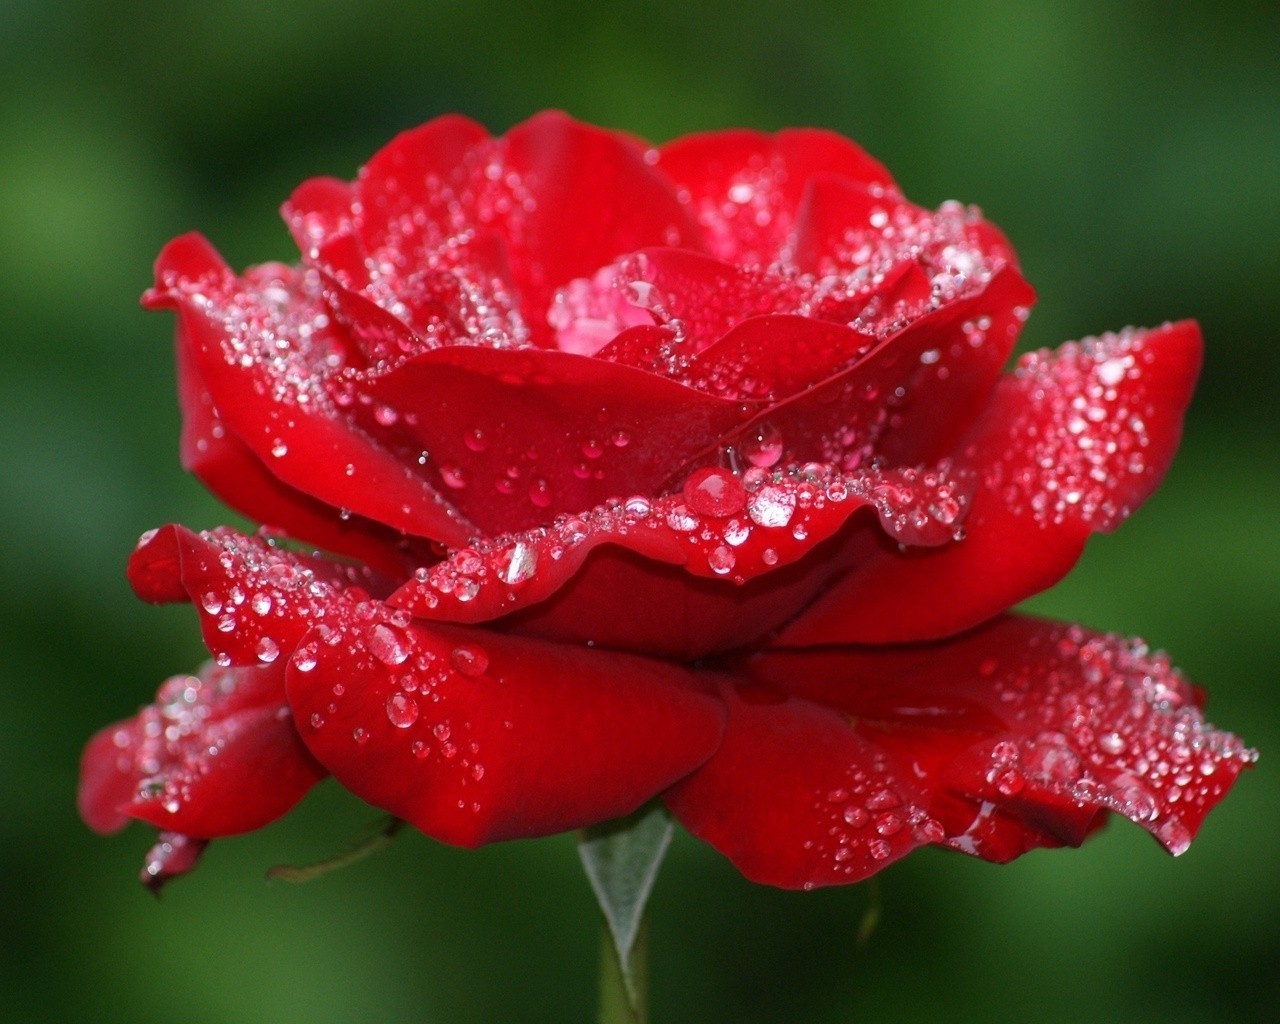 розы росы природа дождь цветок лист лето мокрый сад флора падение капли яркий цвет любовь